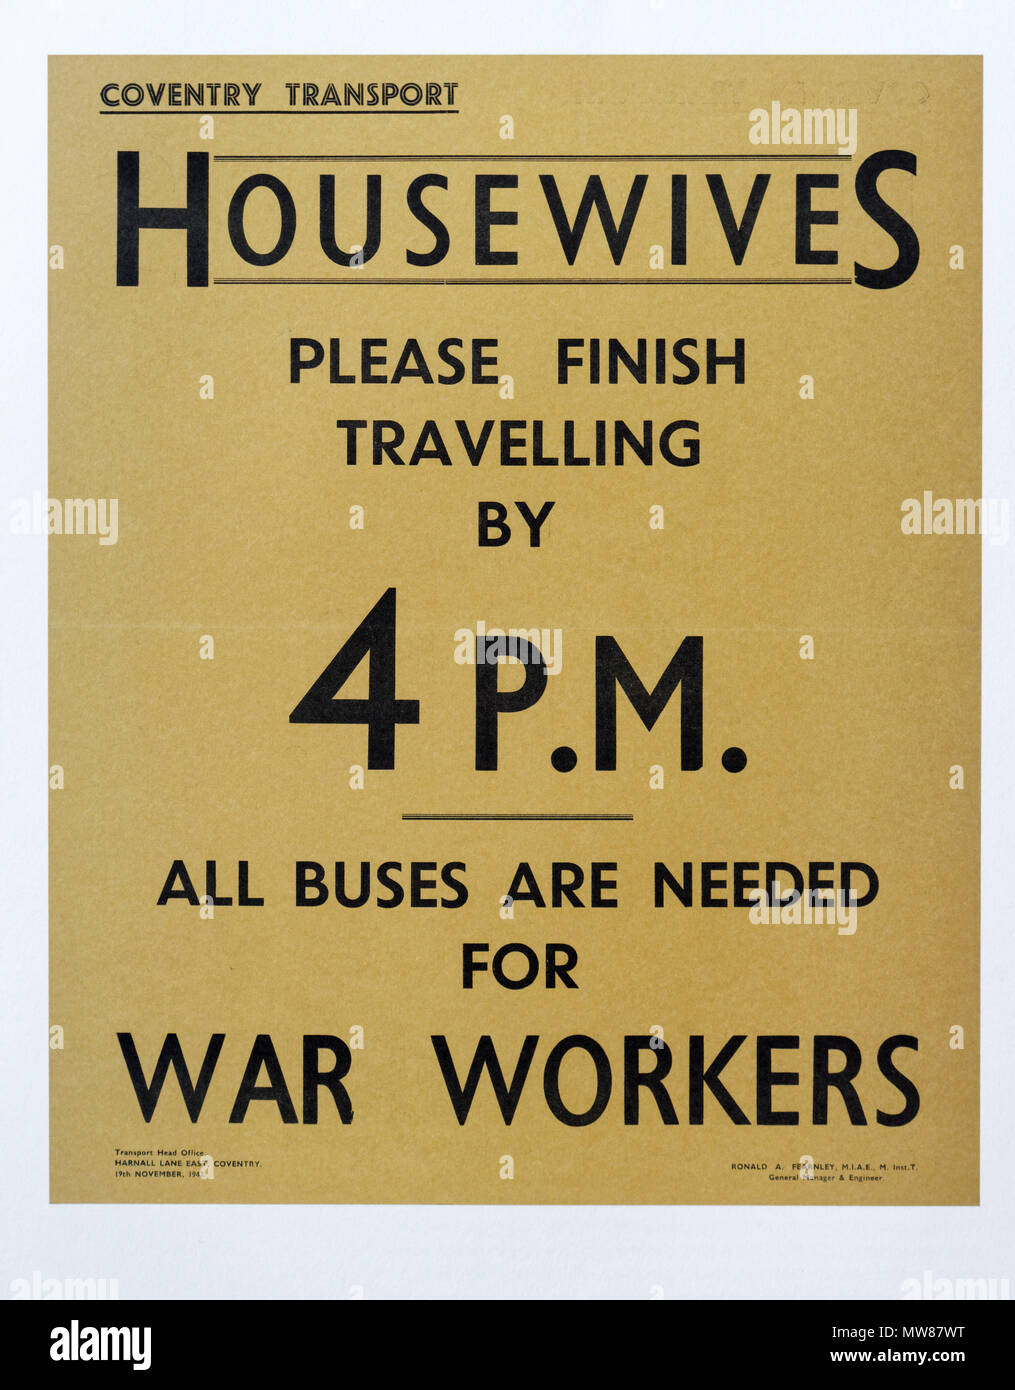 Ein zweiter Weltkrieg Plakat von Coventry, Förderung von Hausfrauen zu Hause um 4:00 Uhr werden die Busse in die freie Nacht Schichtarbeiter zum Flugzeug zu erhalten facto Stockfoto